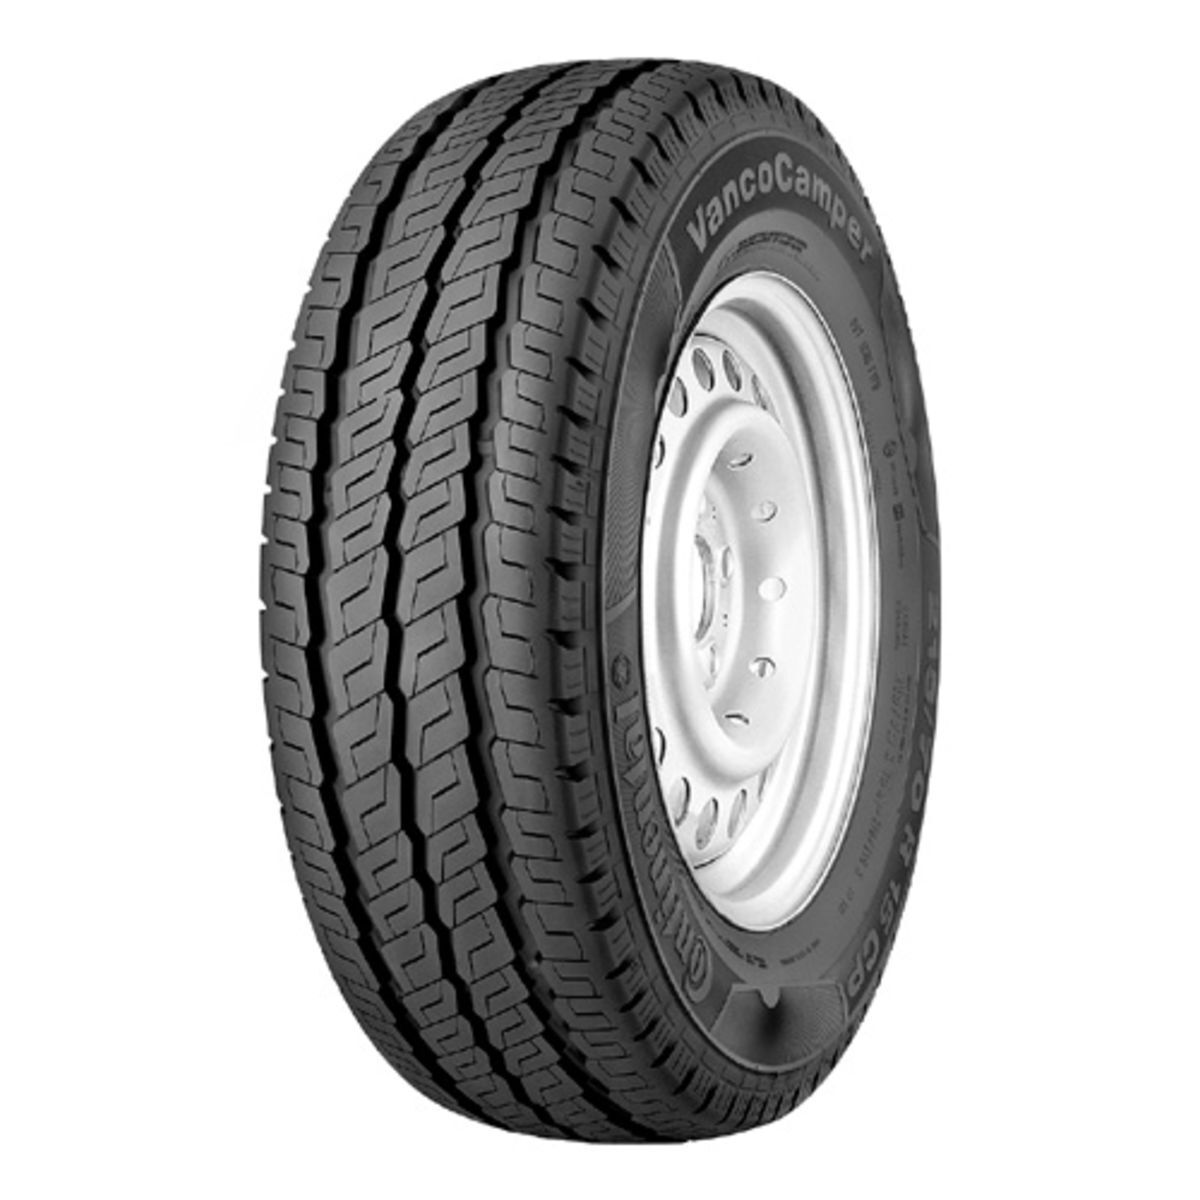 Neumáticos de verano CONTINENTAL VancoCamper 225/65R16CP, 112R TL